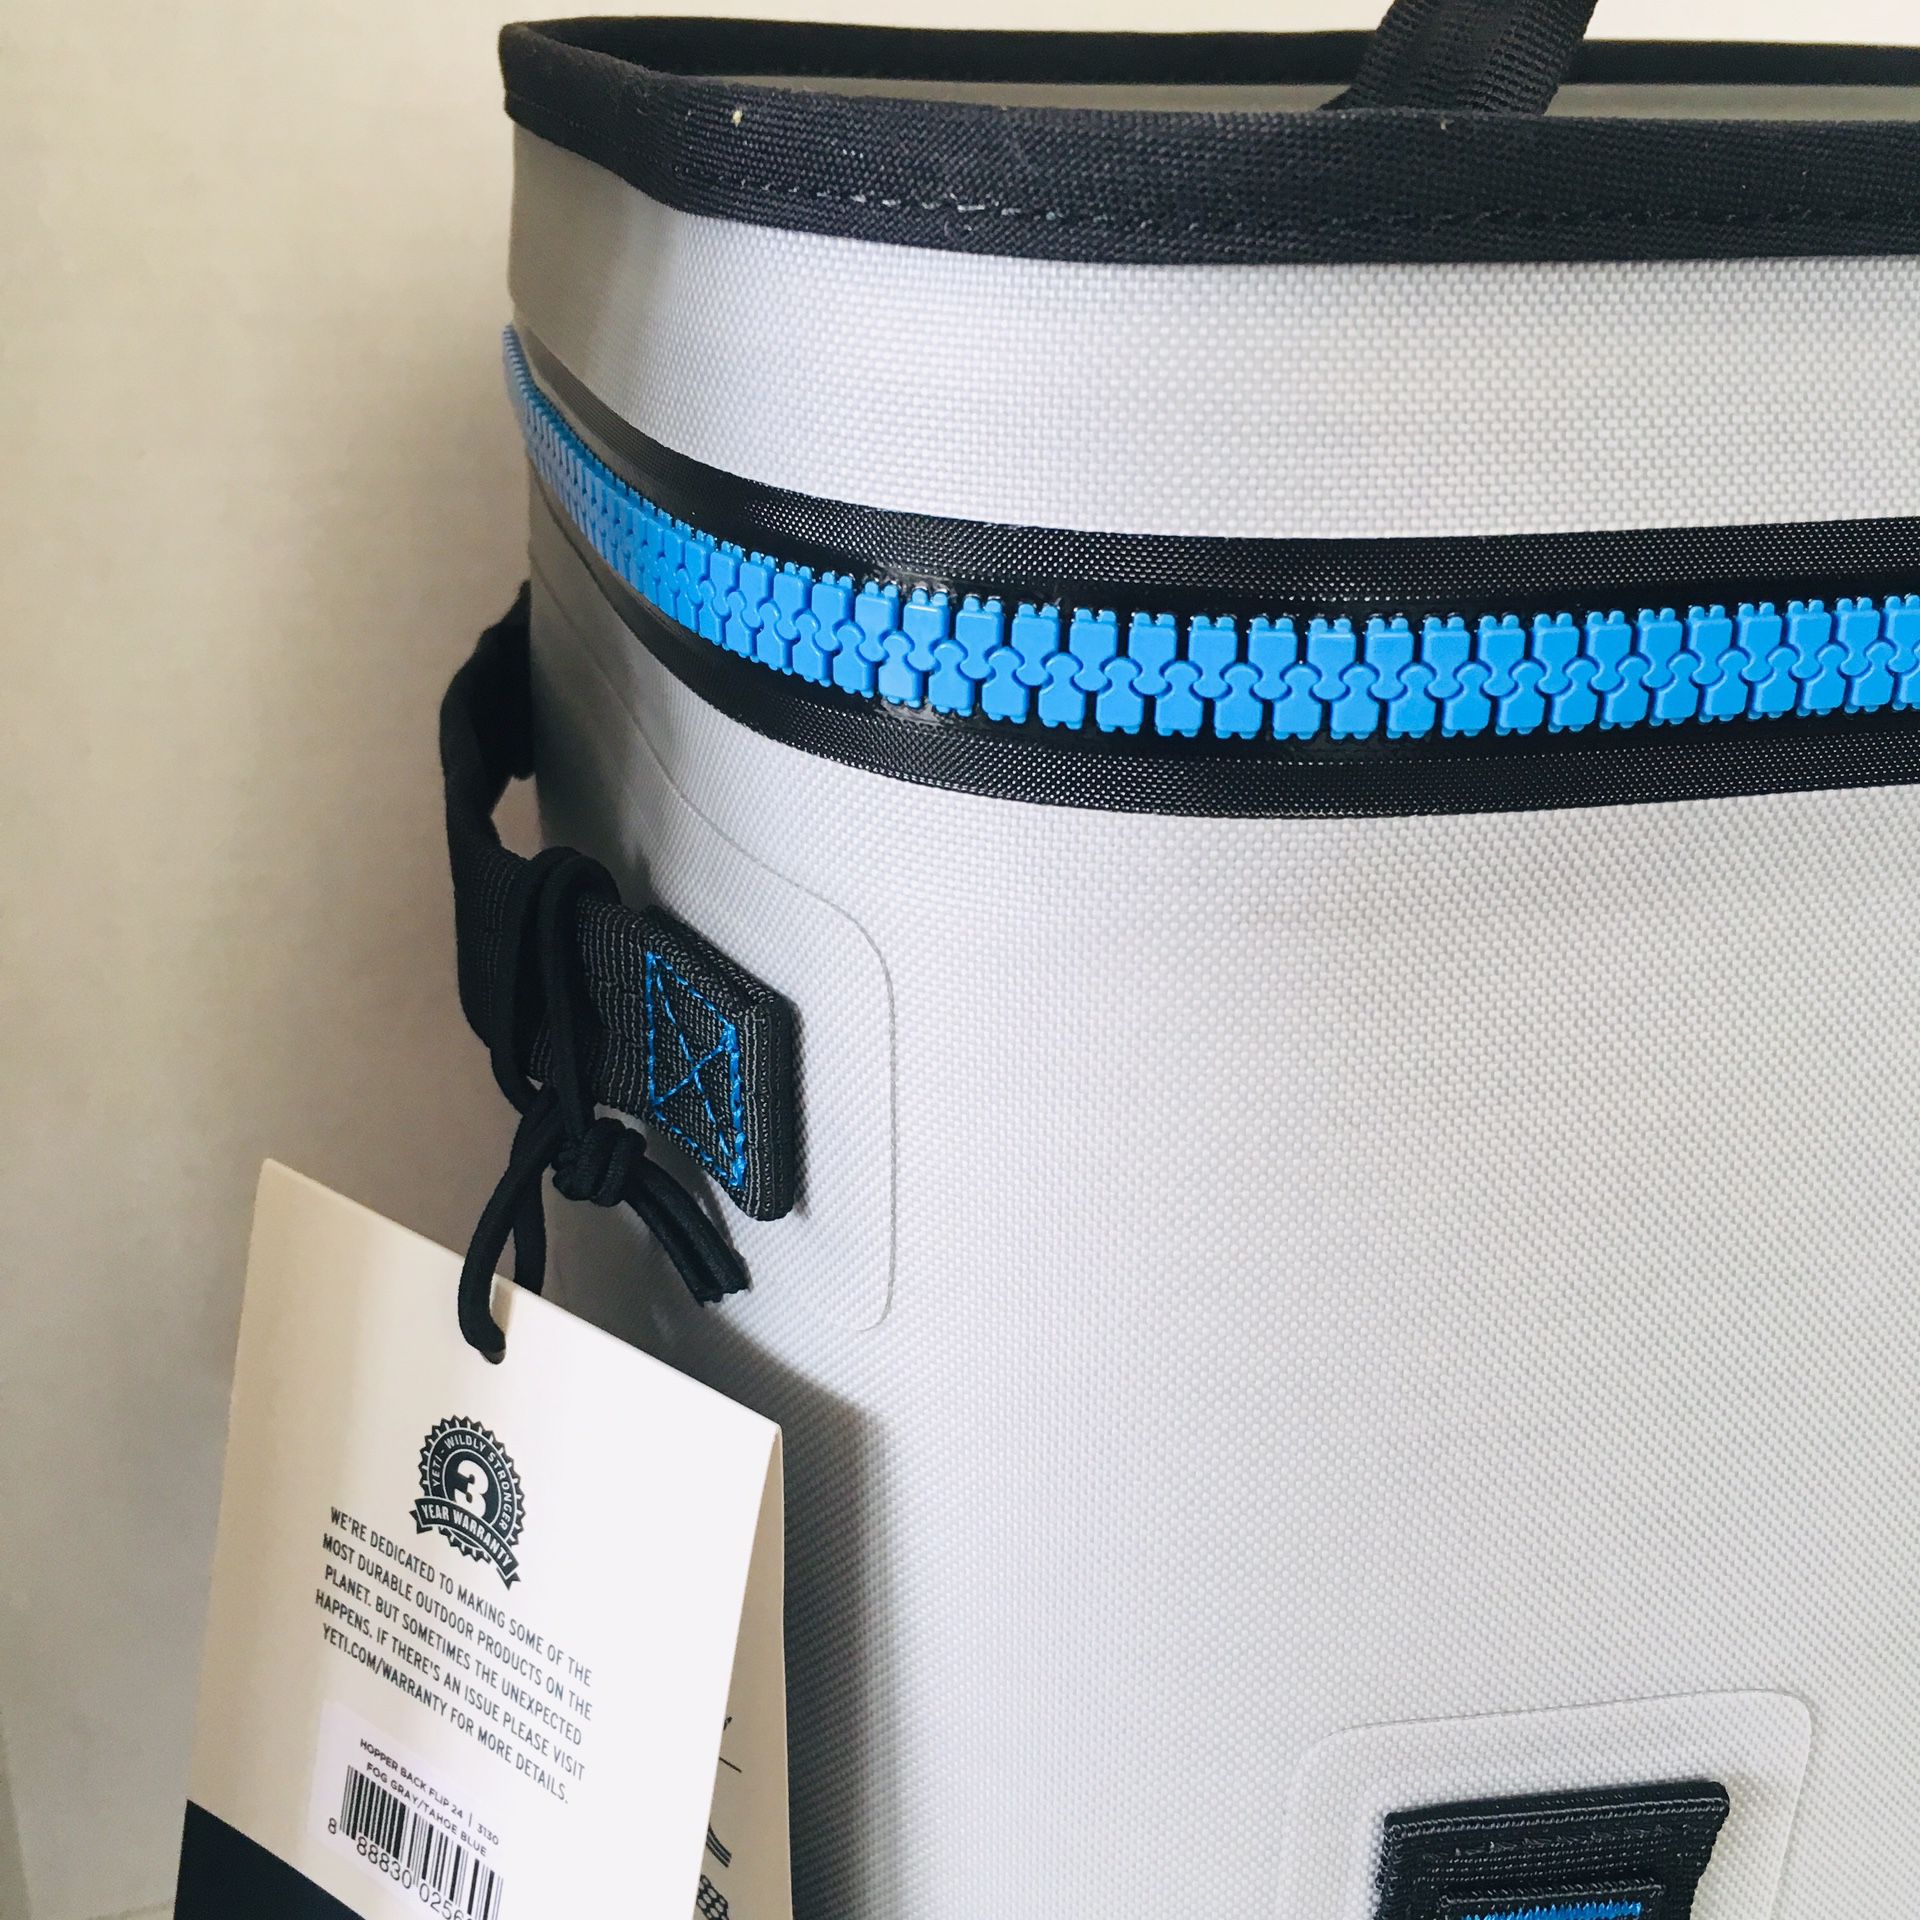 YETI Hopper Backflip 24 Soft Sided Cooler/Backpack, Fog Gray/Tahoe